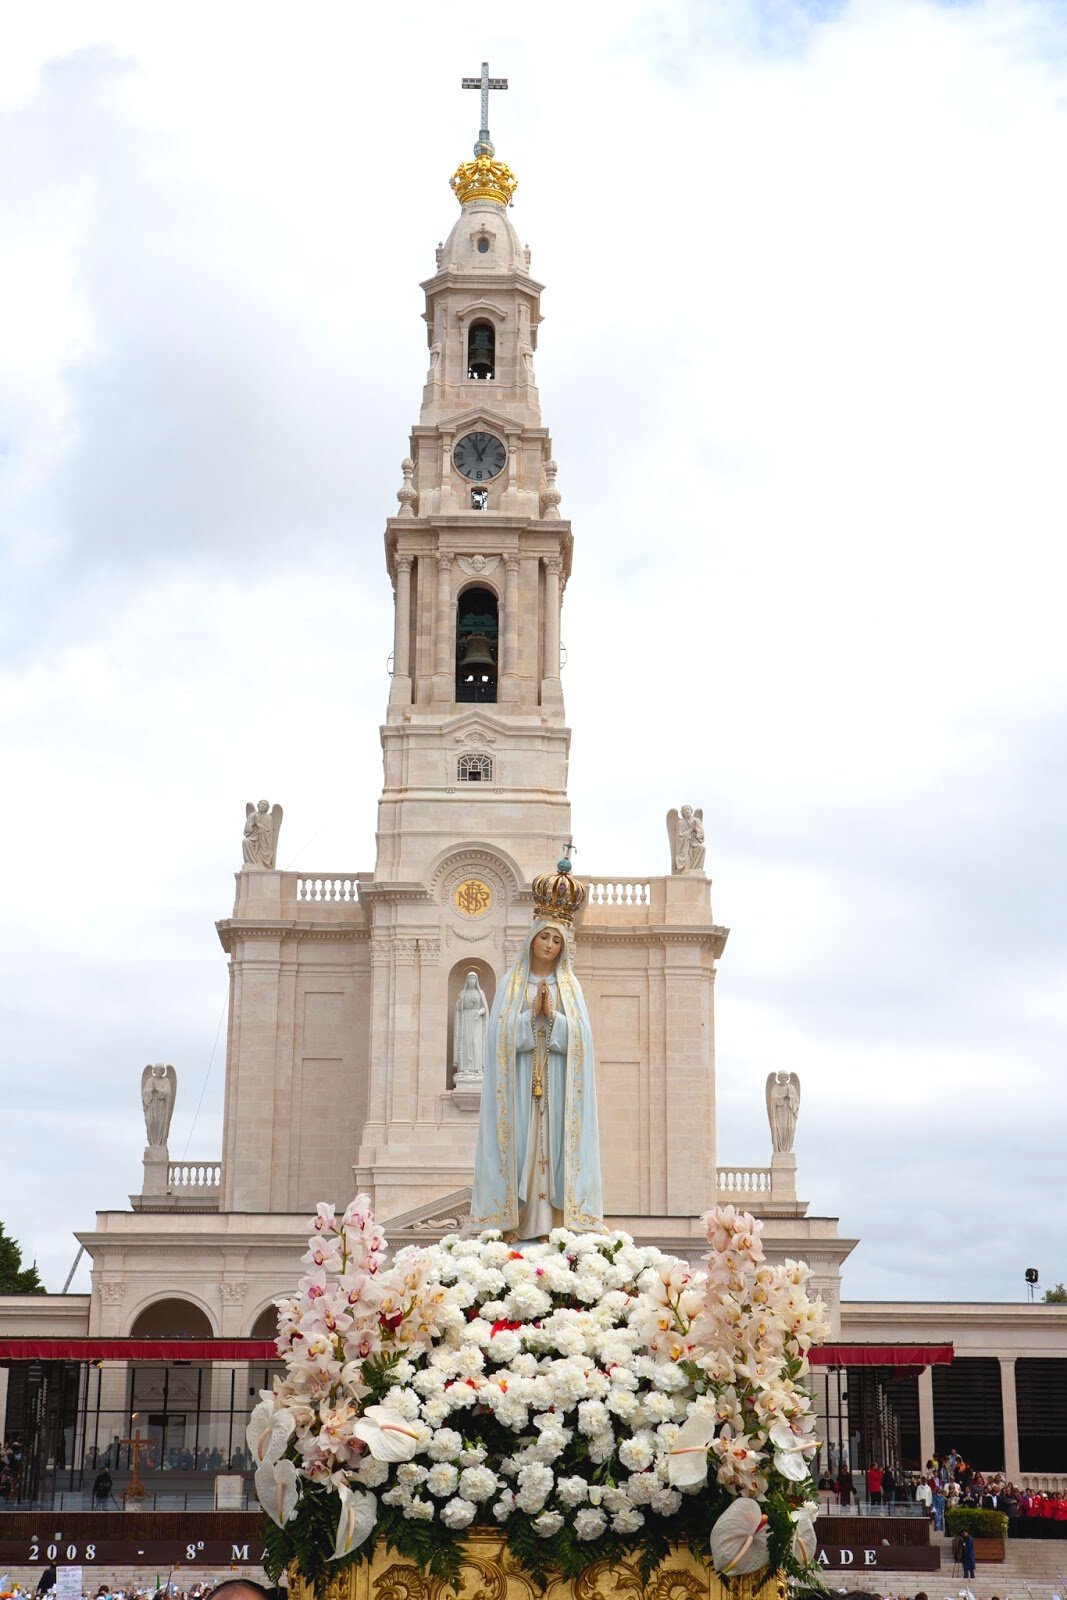 Nossa Senhora de Fátima - Novena, imagens, oração, fotos, pinturas, vitrais